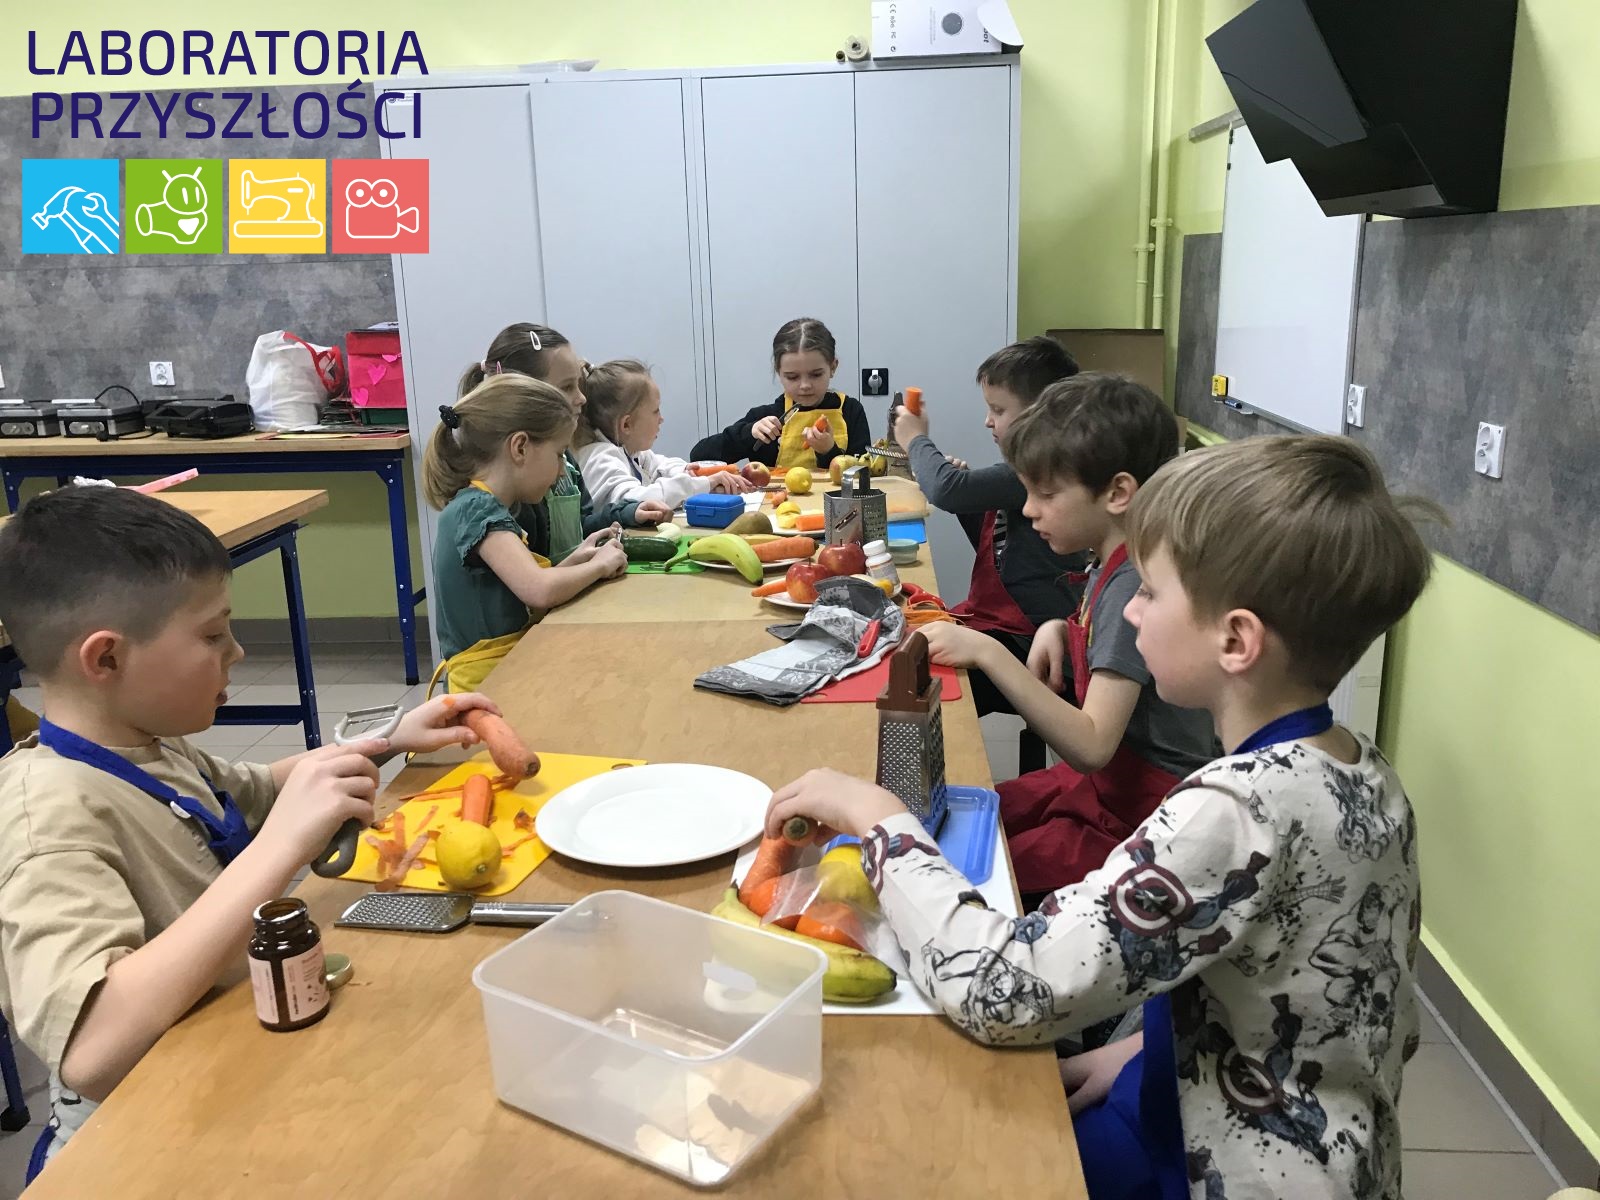 Na zdjęciu grupa uczniów  siedzi przy stole, przygotowują warzywa  i owoce na sałatkę. Na stole rozłożone deski do krojenia, talerze, tarki.